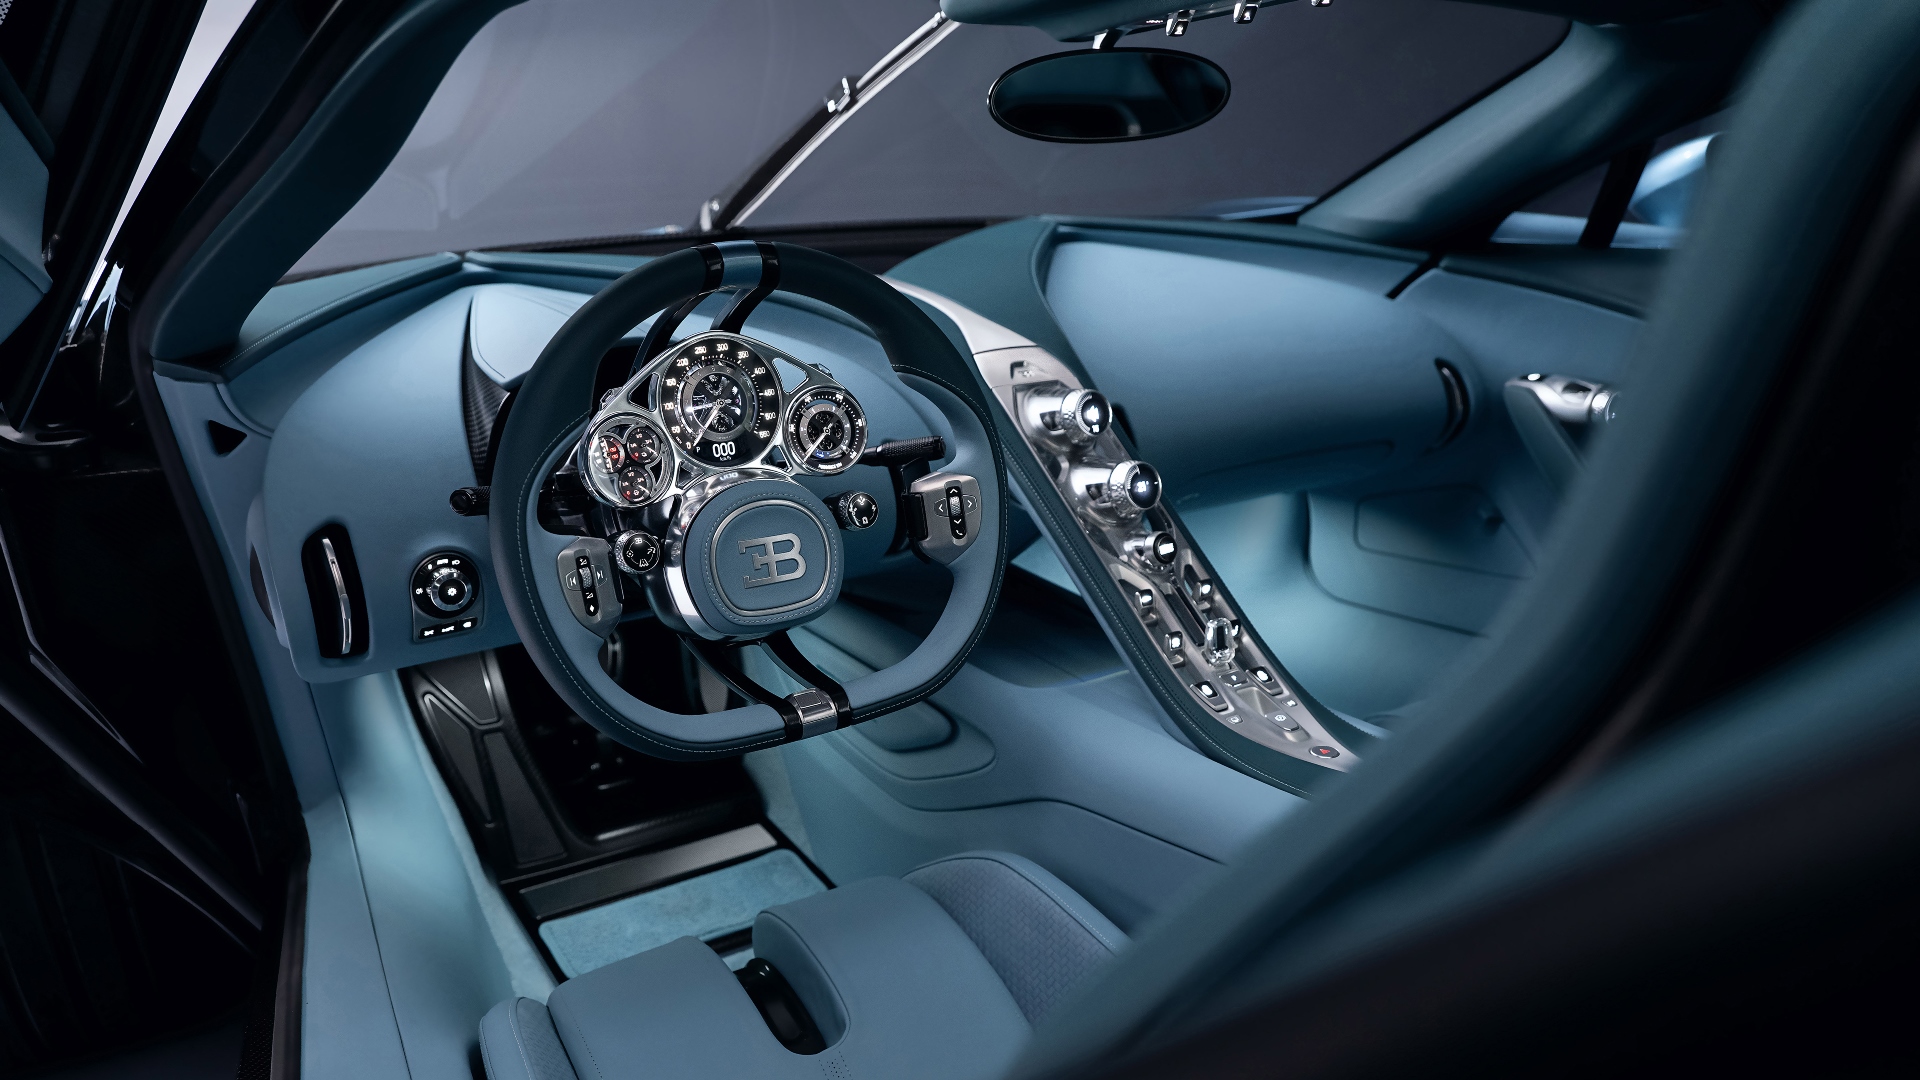 bugatti-world-premiere-presskit-images-34-photo.jpg